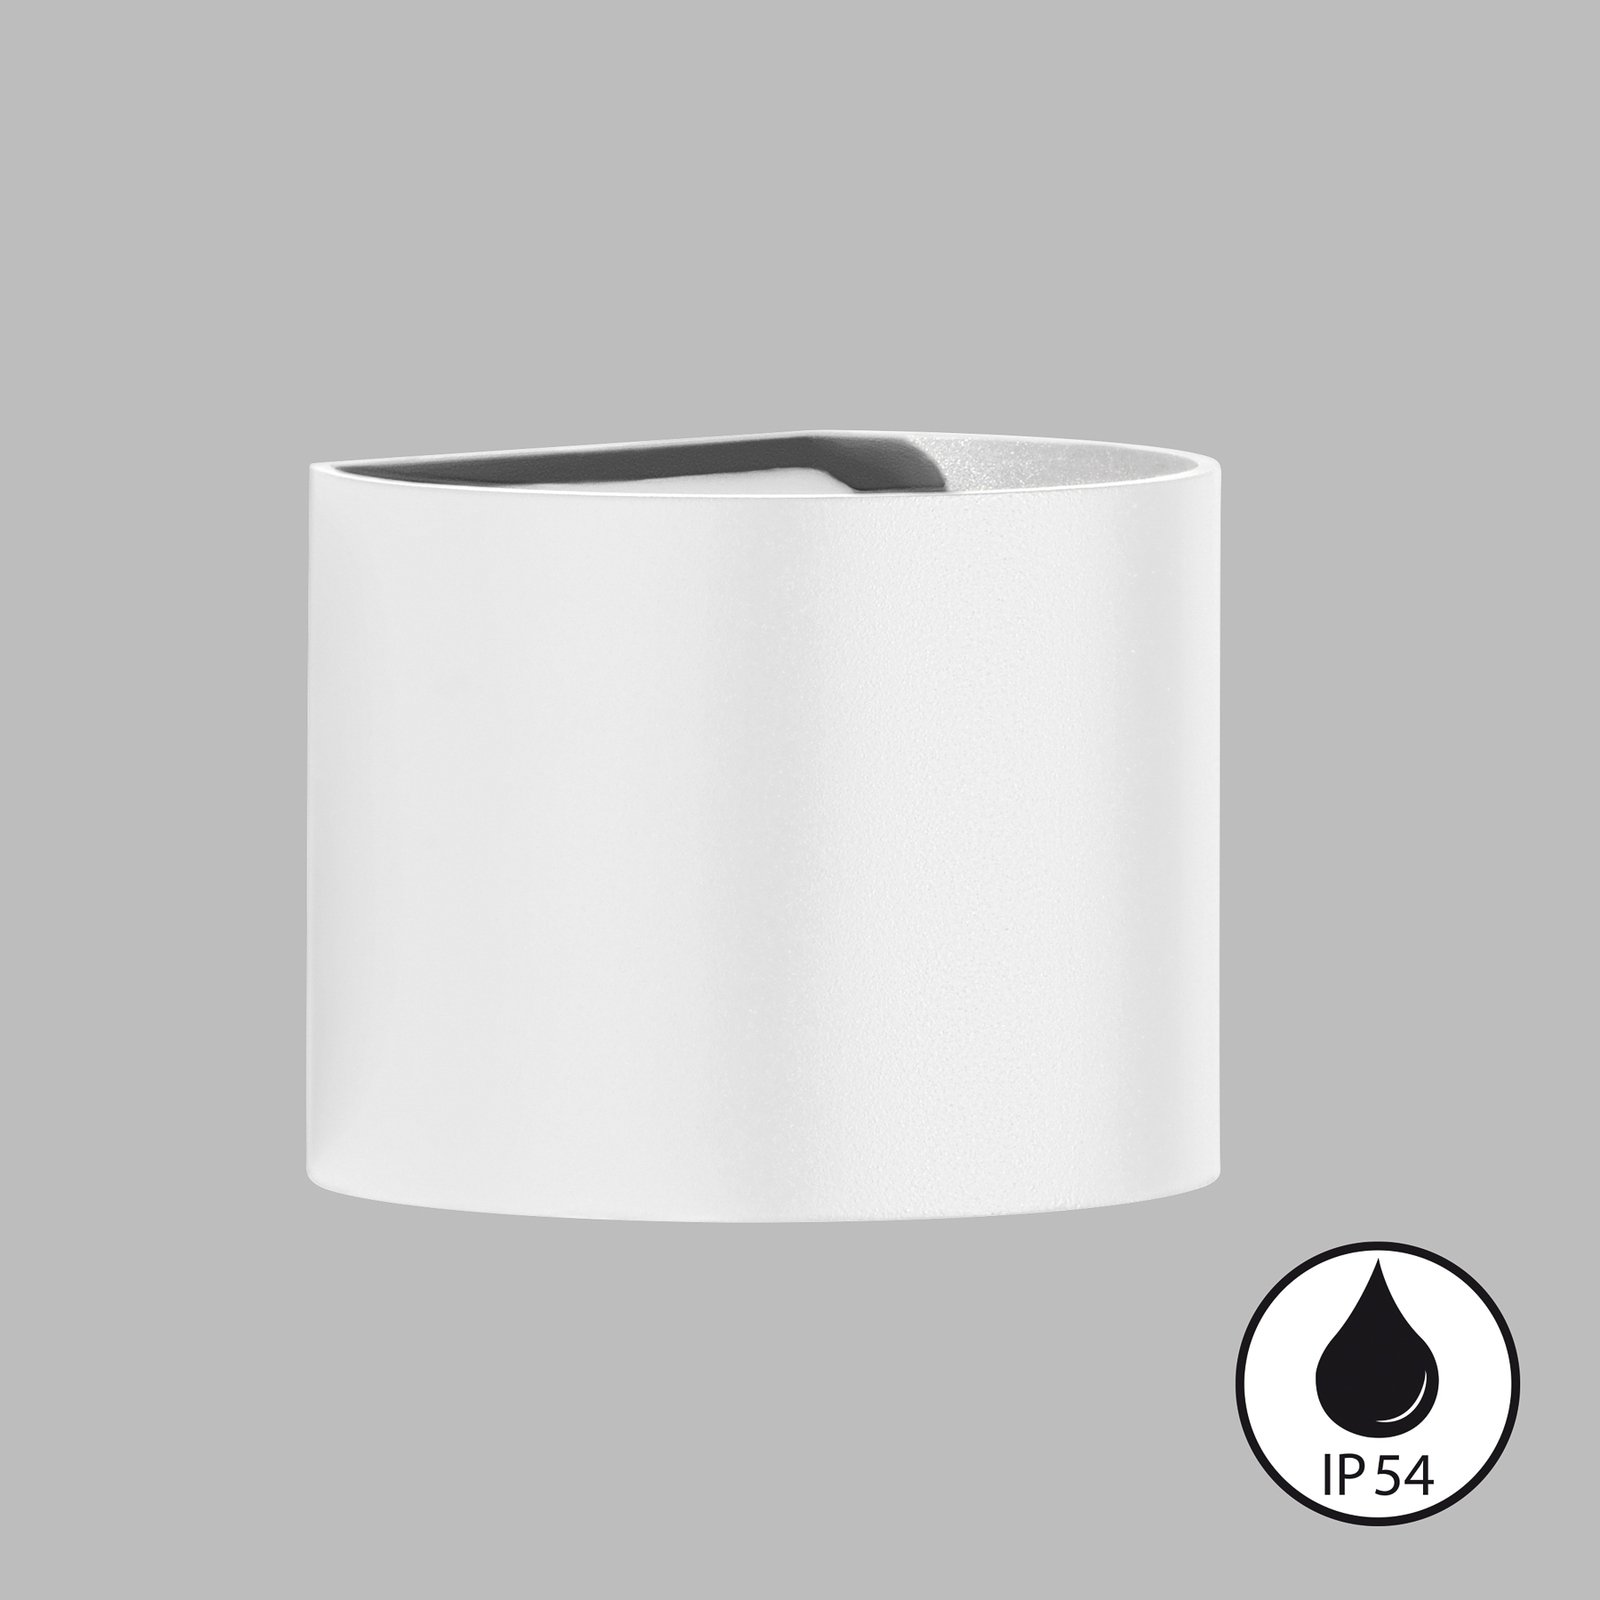 LED lauko sieninis šviestuvas "Matteo", baltos spalvos, 14 cm pločio, 2